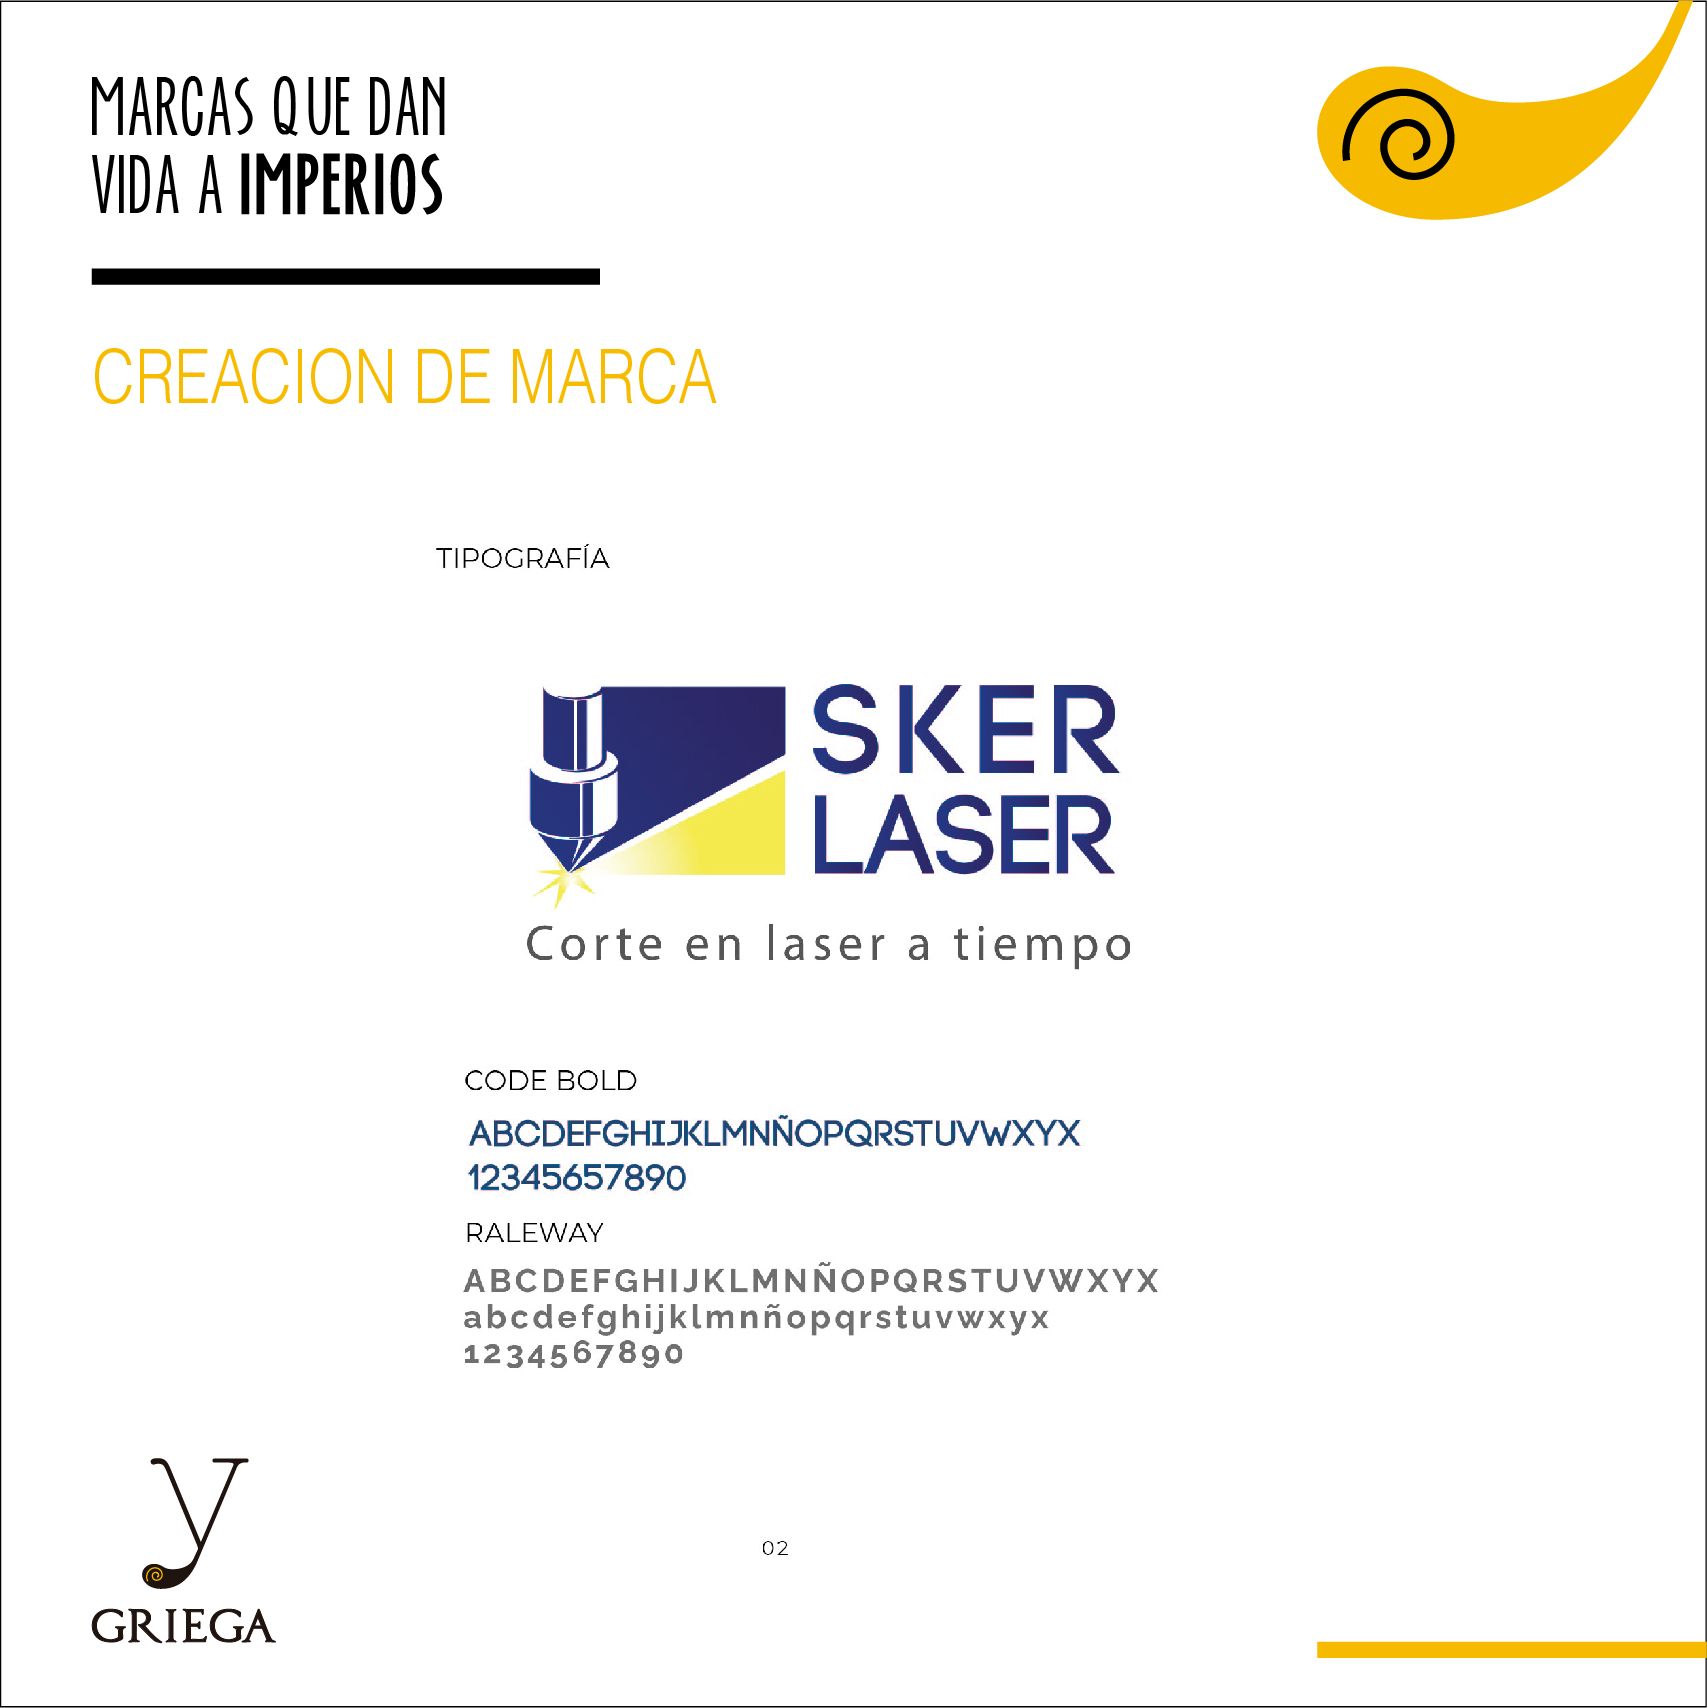 Sker laser